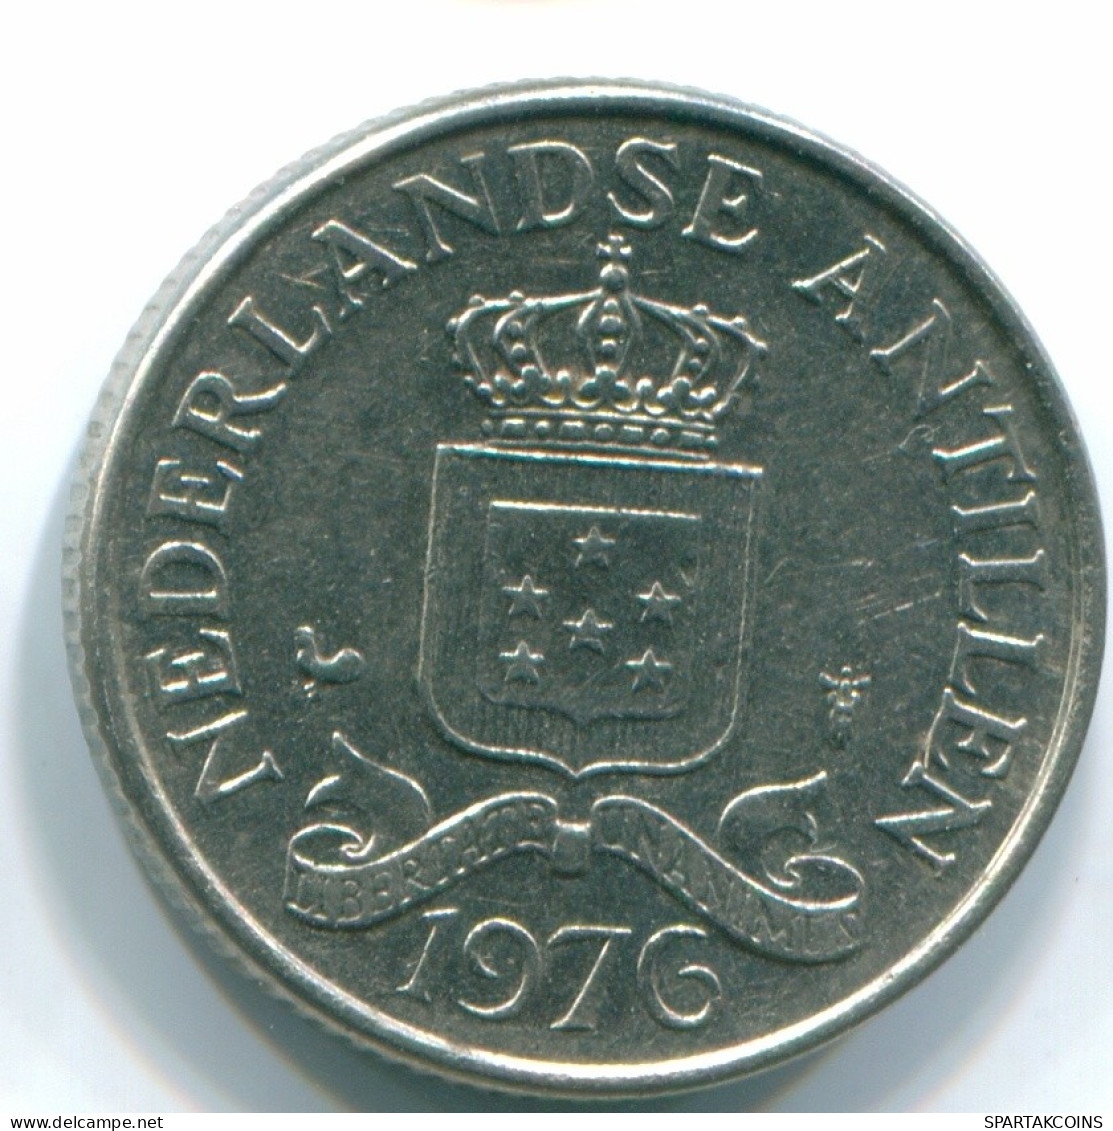 25 CENTS 1976 NETHERLANDS ANTILLES Nickel Colonial Coin #S11640.U.A - Niederländische Antillen